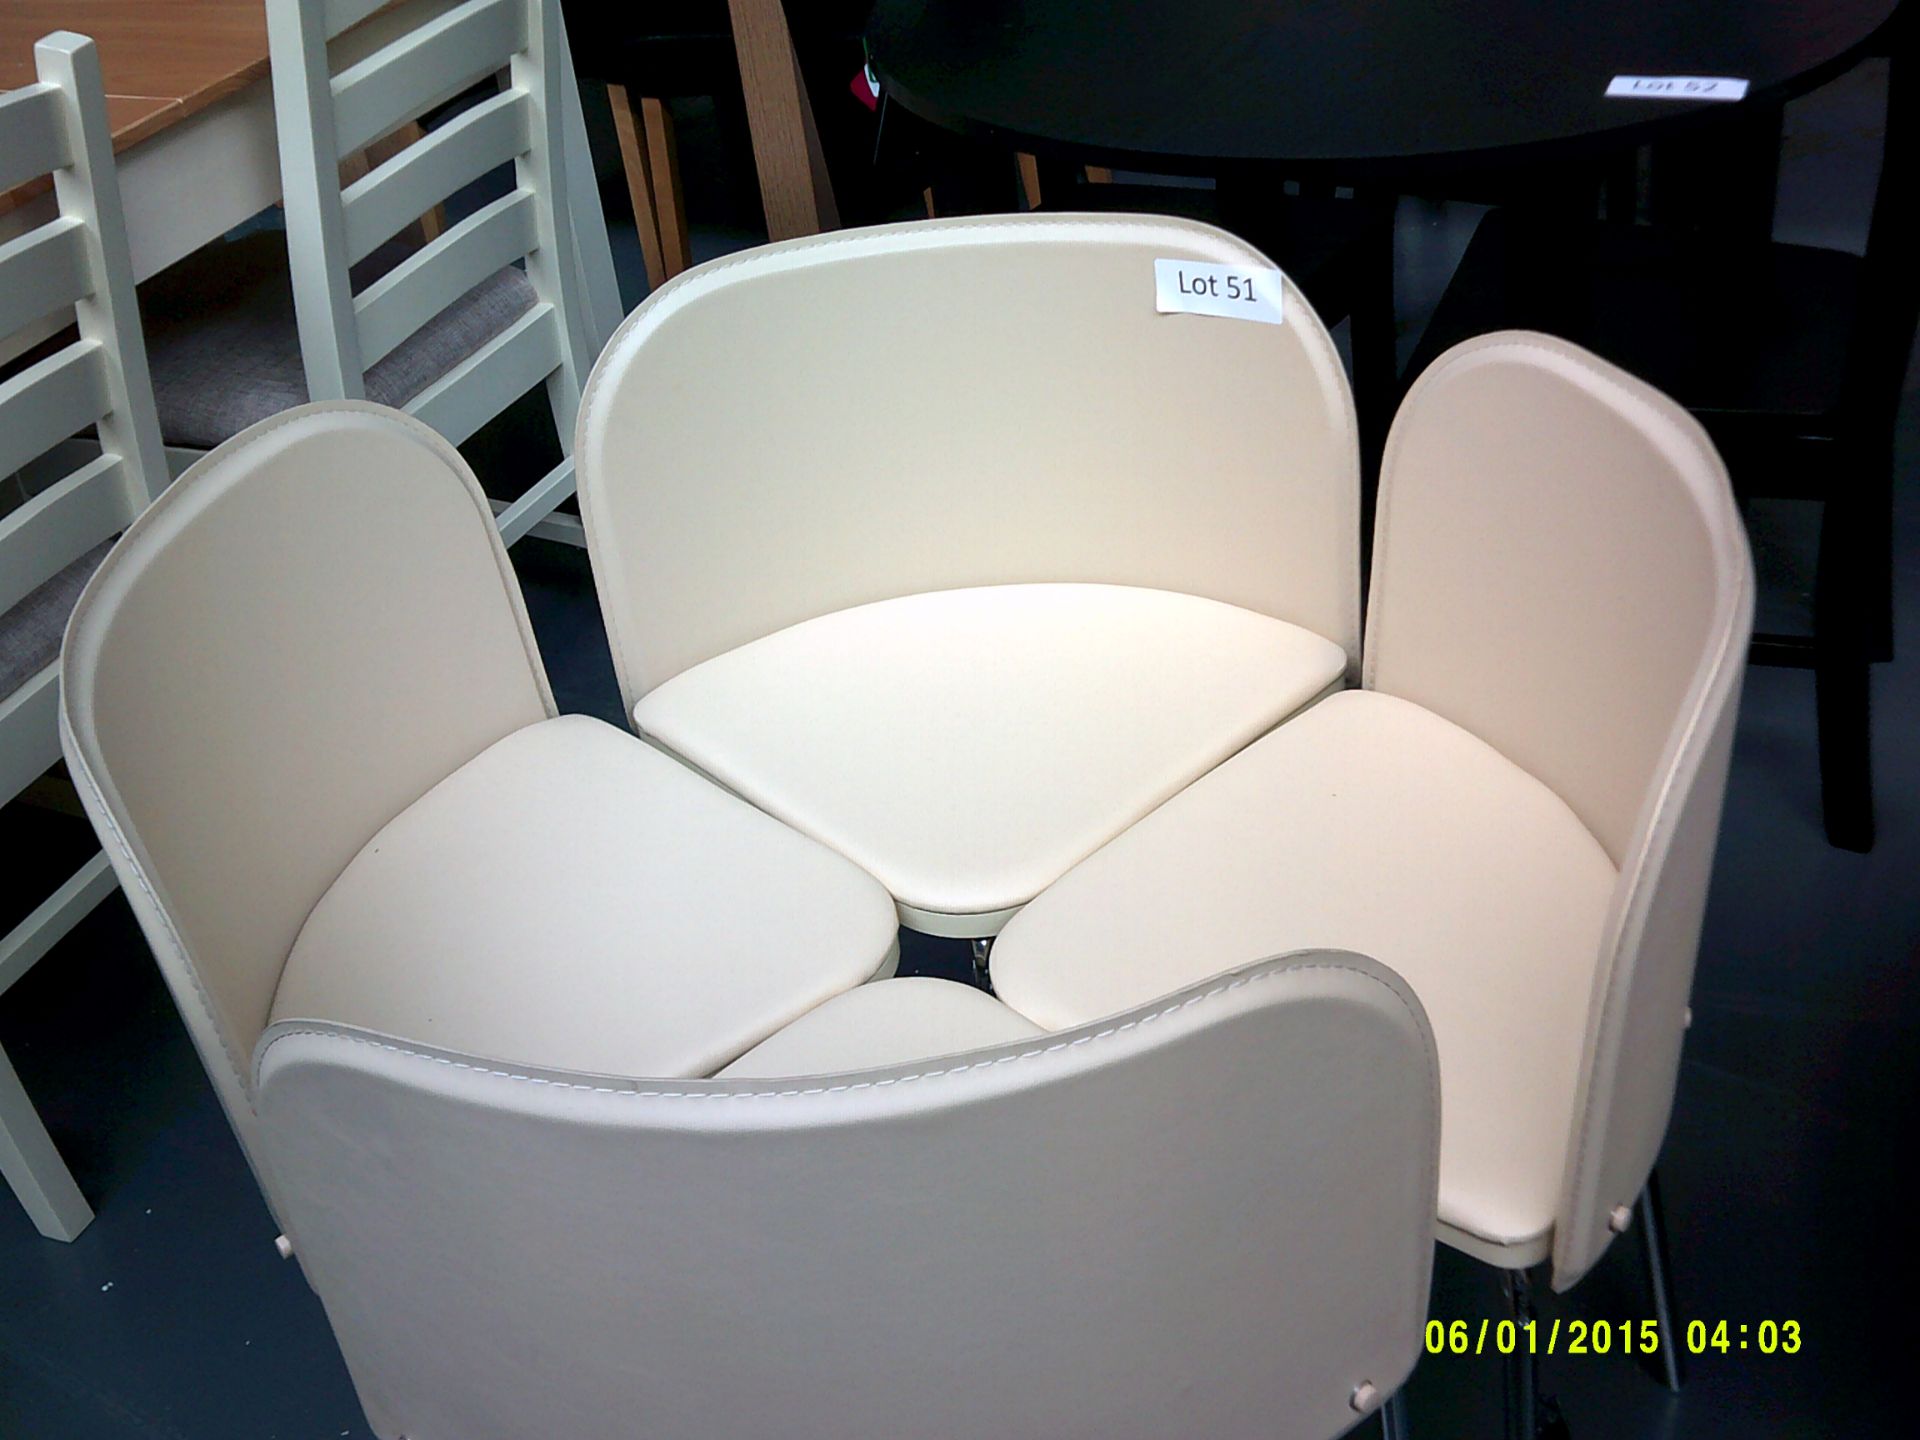 4 Cream Chairs Customer Returns